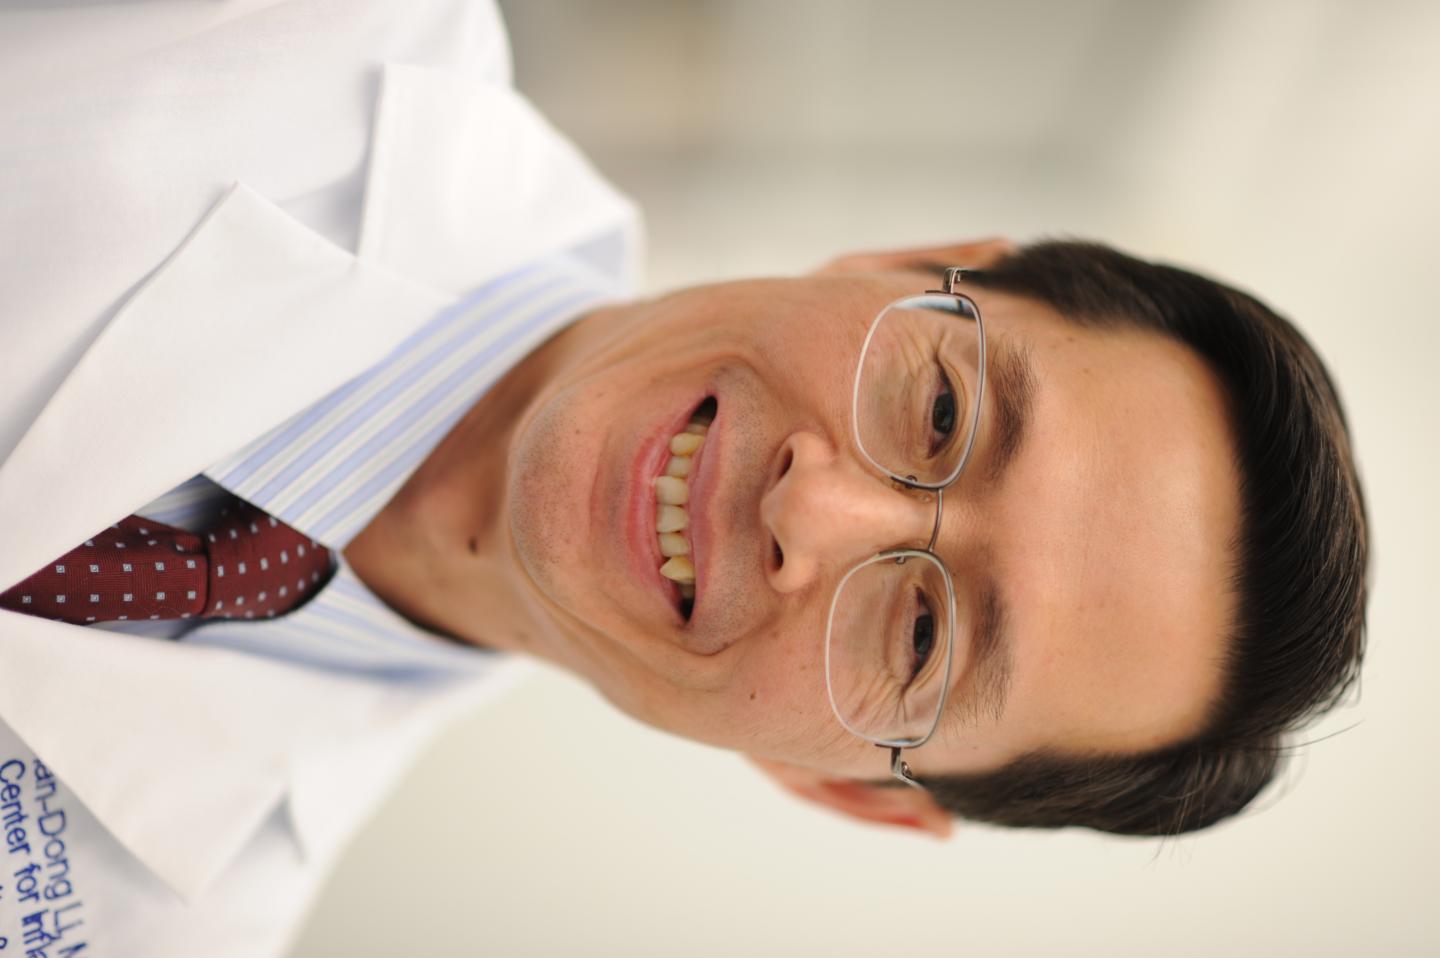 Dr. Jian-Dong Li